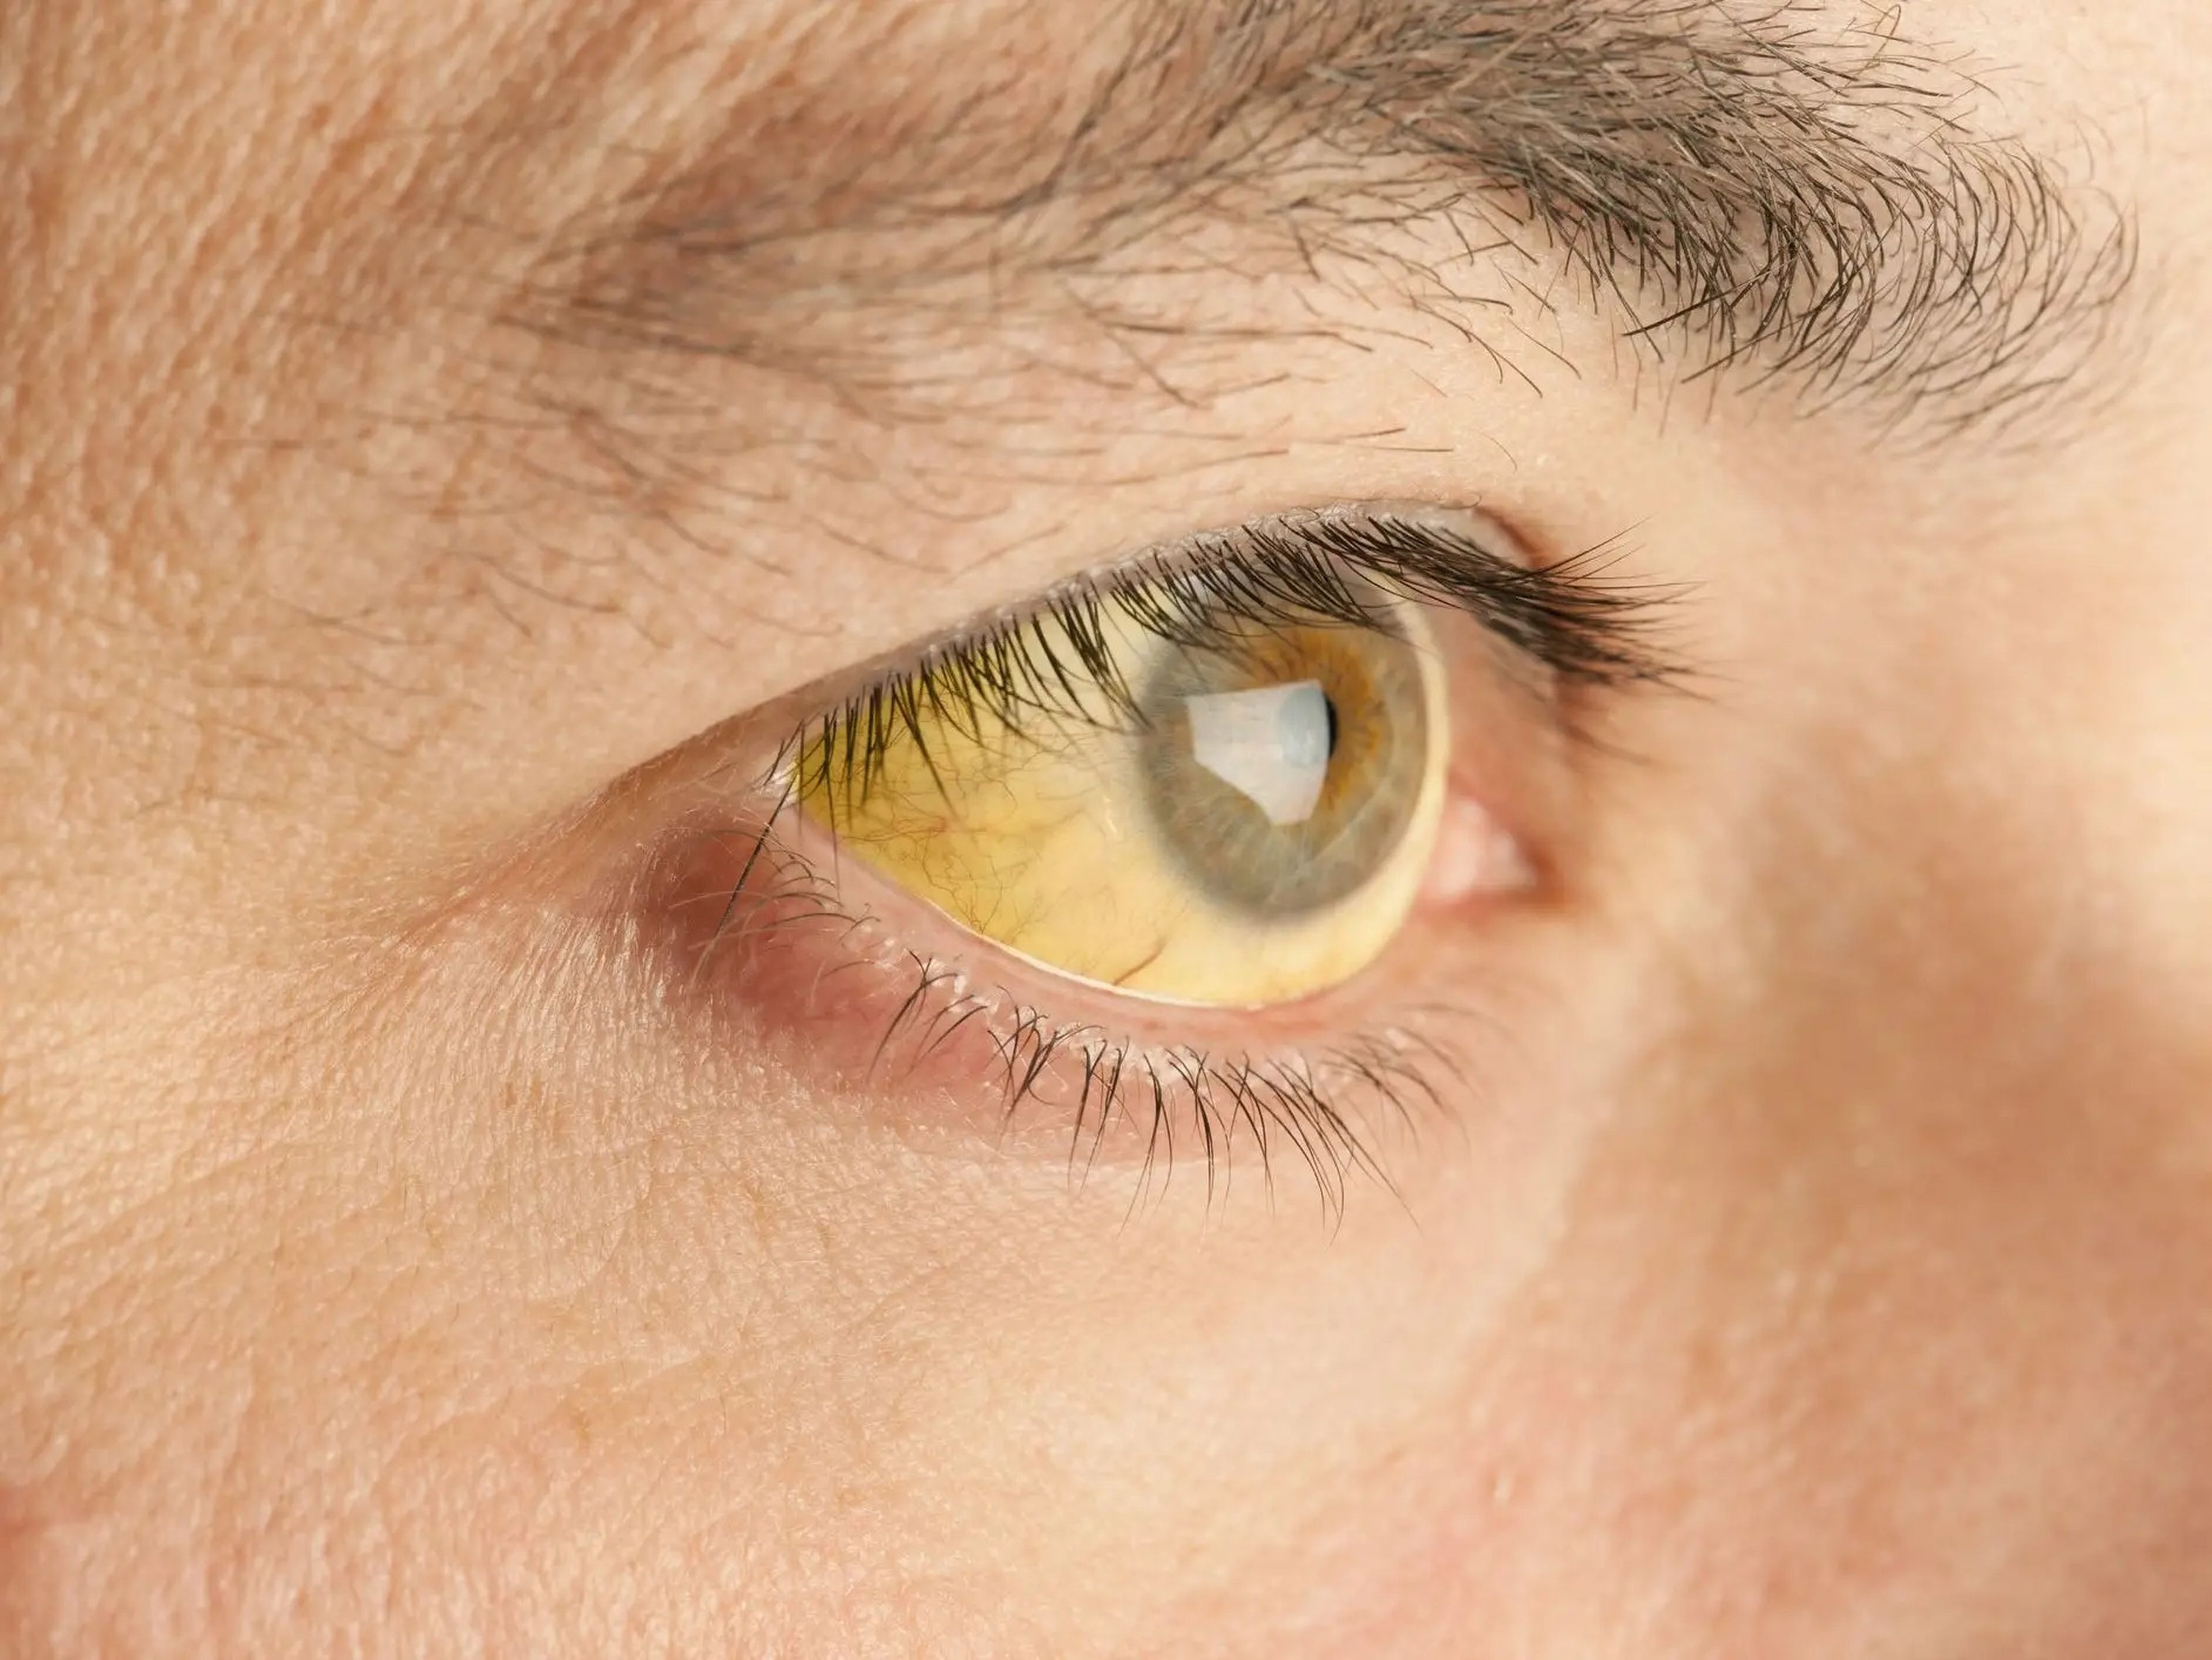 El color amarillento de los ojos puede ser un signo de cáncer de estómago avanzado, según el Instituto Nacional del Cáncer.